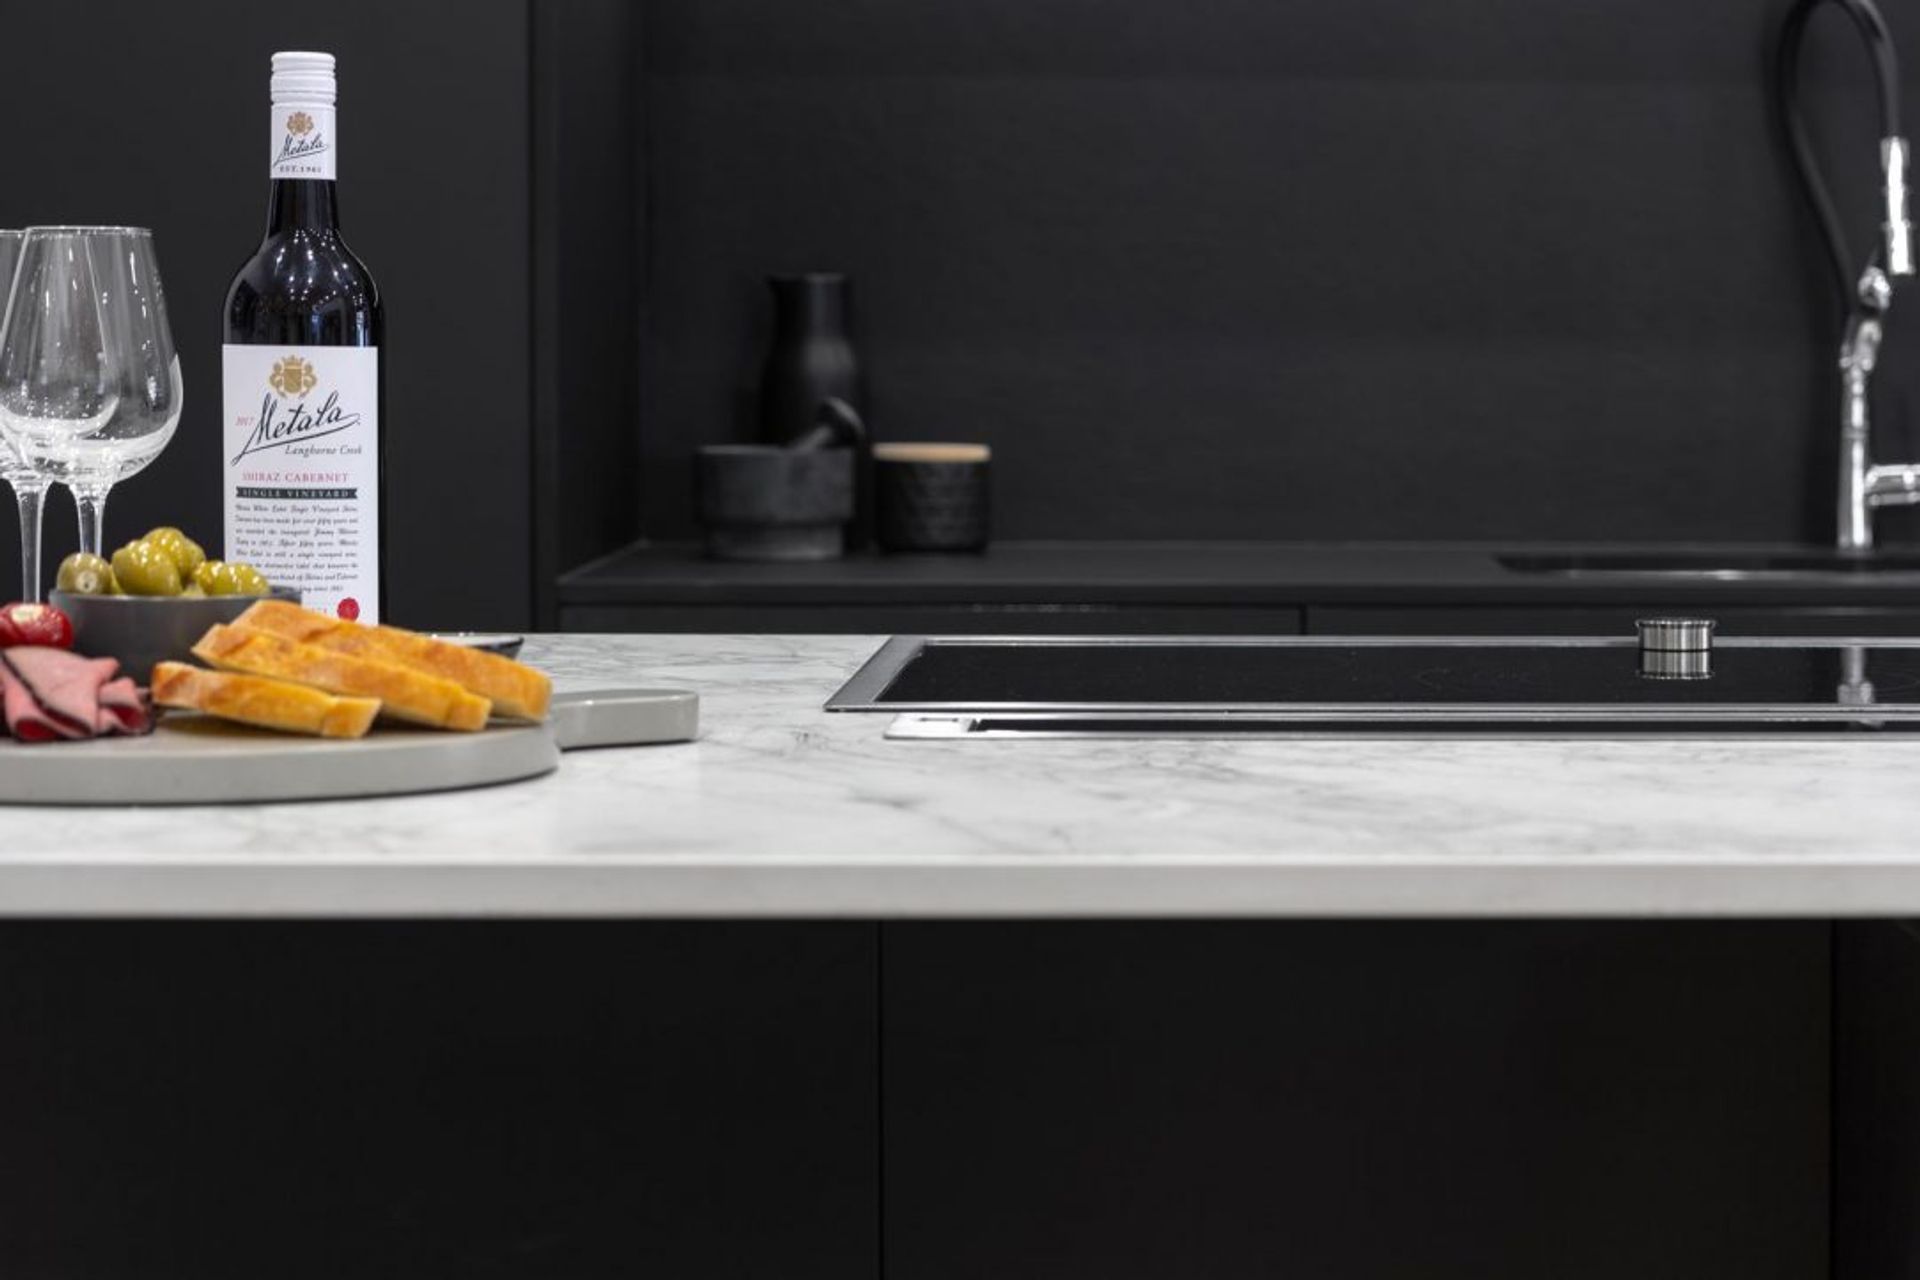 modern-kitchen-design-sydney-kitchen-showroom-dekton-portum-benchtop-black-cabinets-1-1084x723.jpg